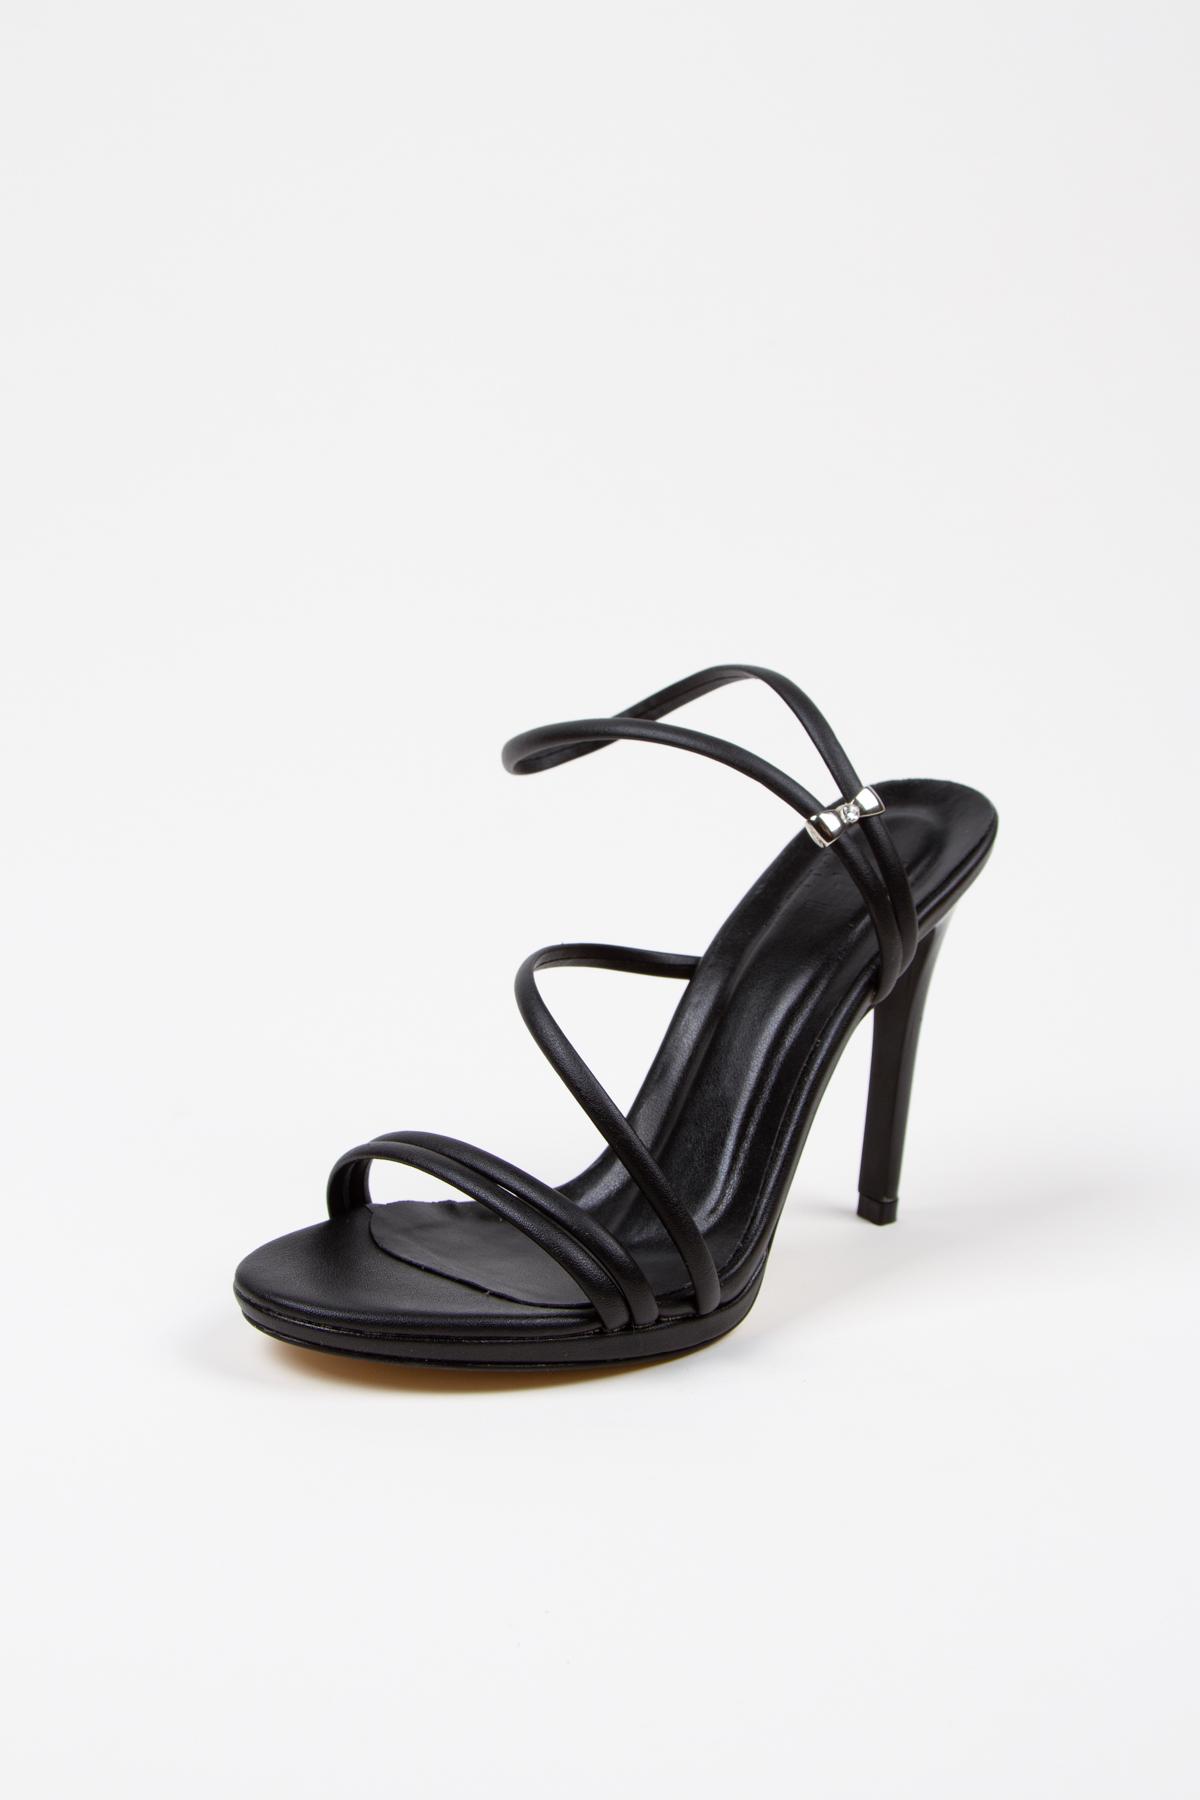 Kadın Yazlık 10 cm İnce Topuklu Ayakkabı ve Çanta Takımı Siyah